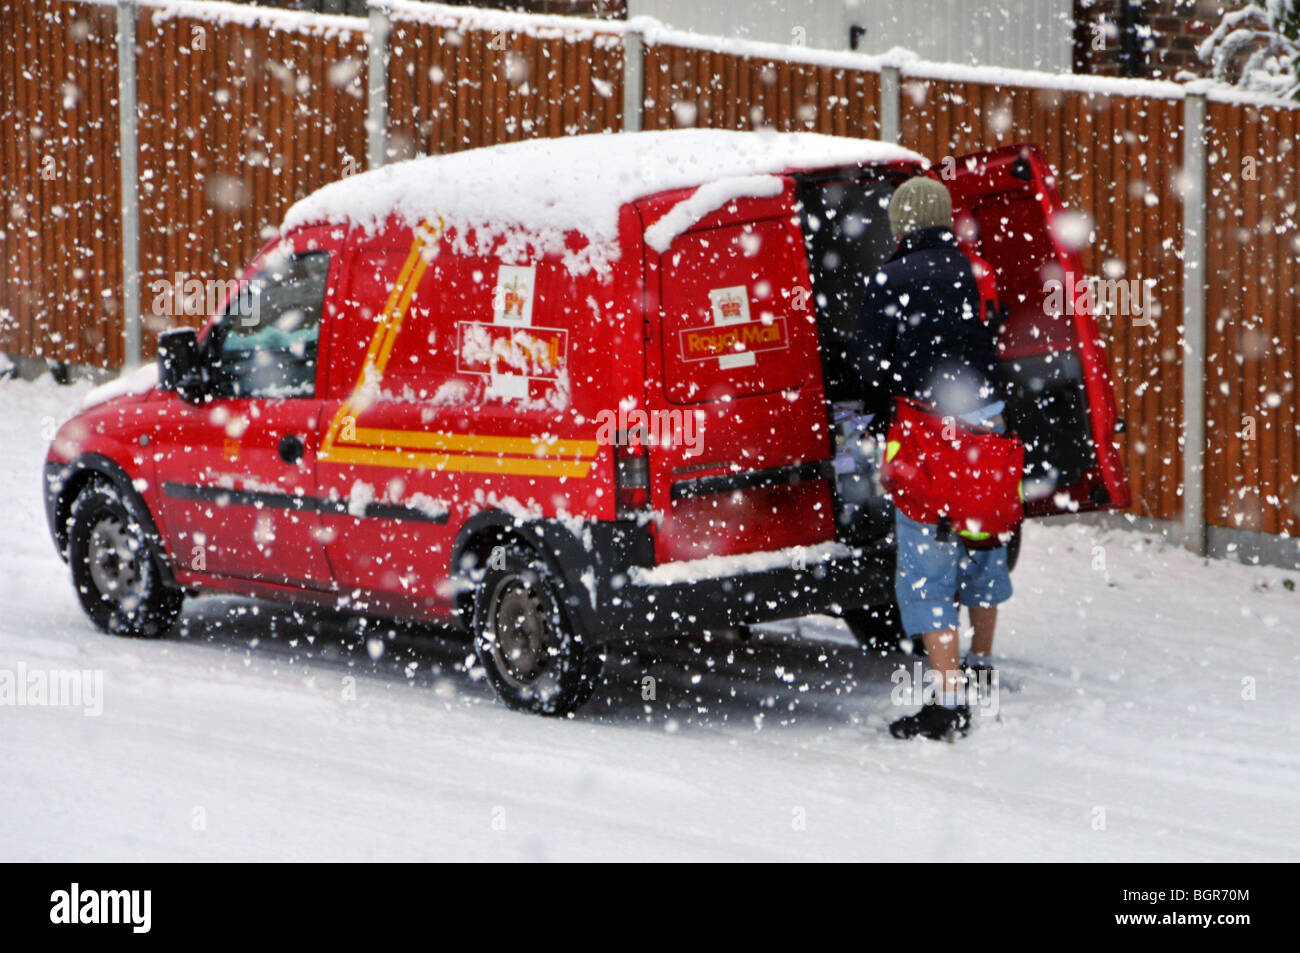 Inverno freddo scena nevicando sulla posta reale consegna postman lavoro da post van in strada residenziale in tempesta di neve Brentwood Essex Inghilterra Regno Unito Foto Stock